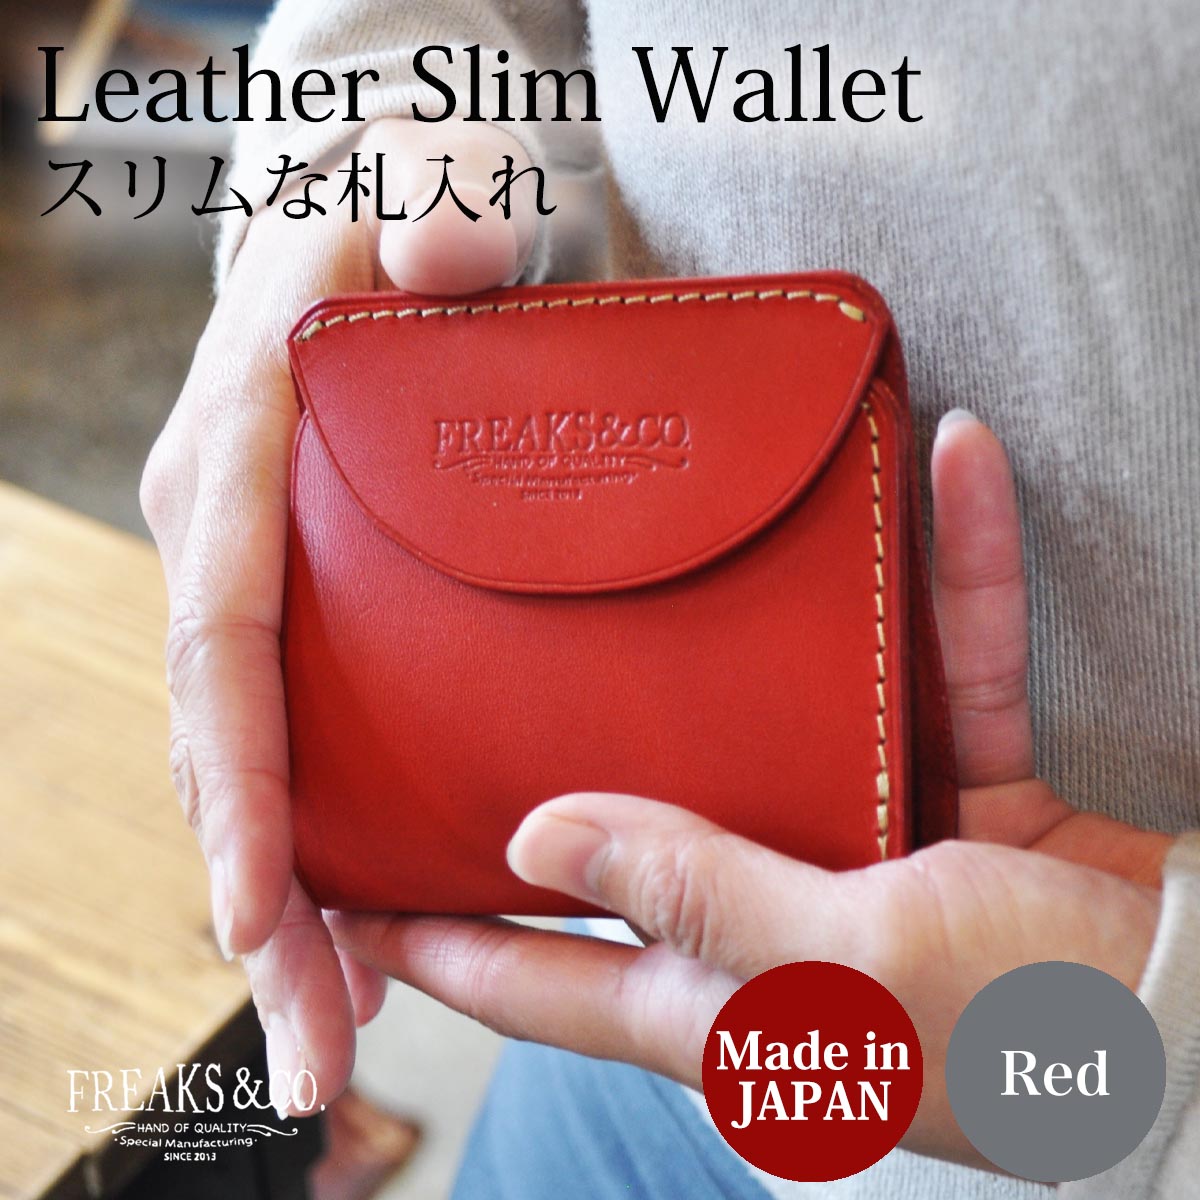 マネークリップ 財布 札ばさみ 薄い財布 メンズ レディース 本革 カード ブランド かわいい おしゃれ シンプル 薄い 軽い 小さめ 二つ折り  栃木レザー 日本製